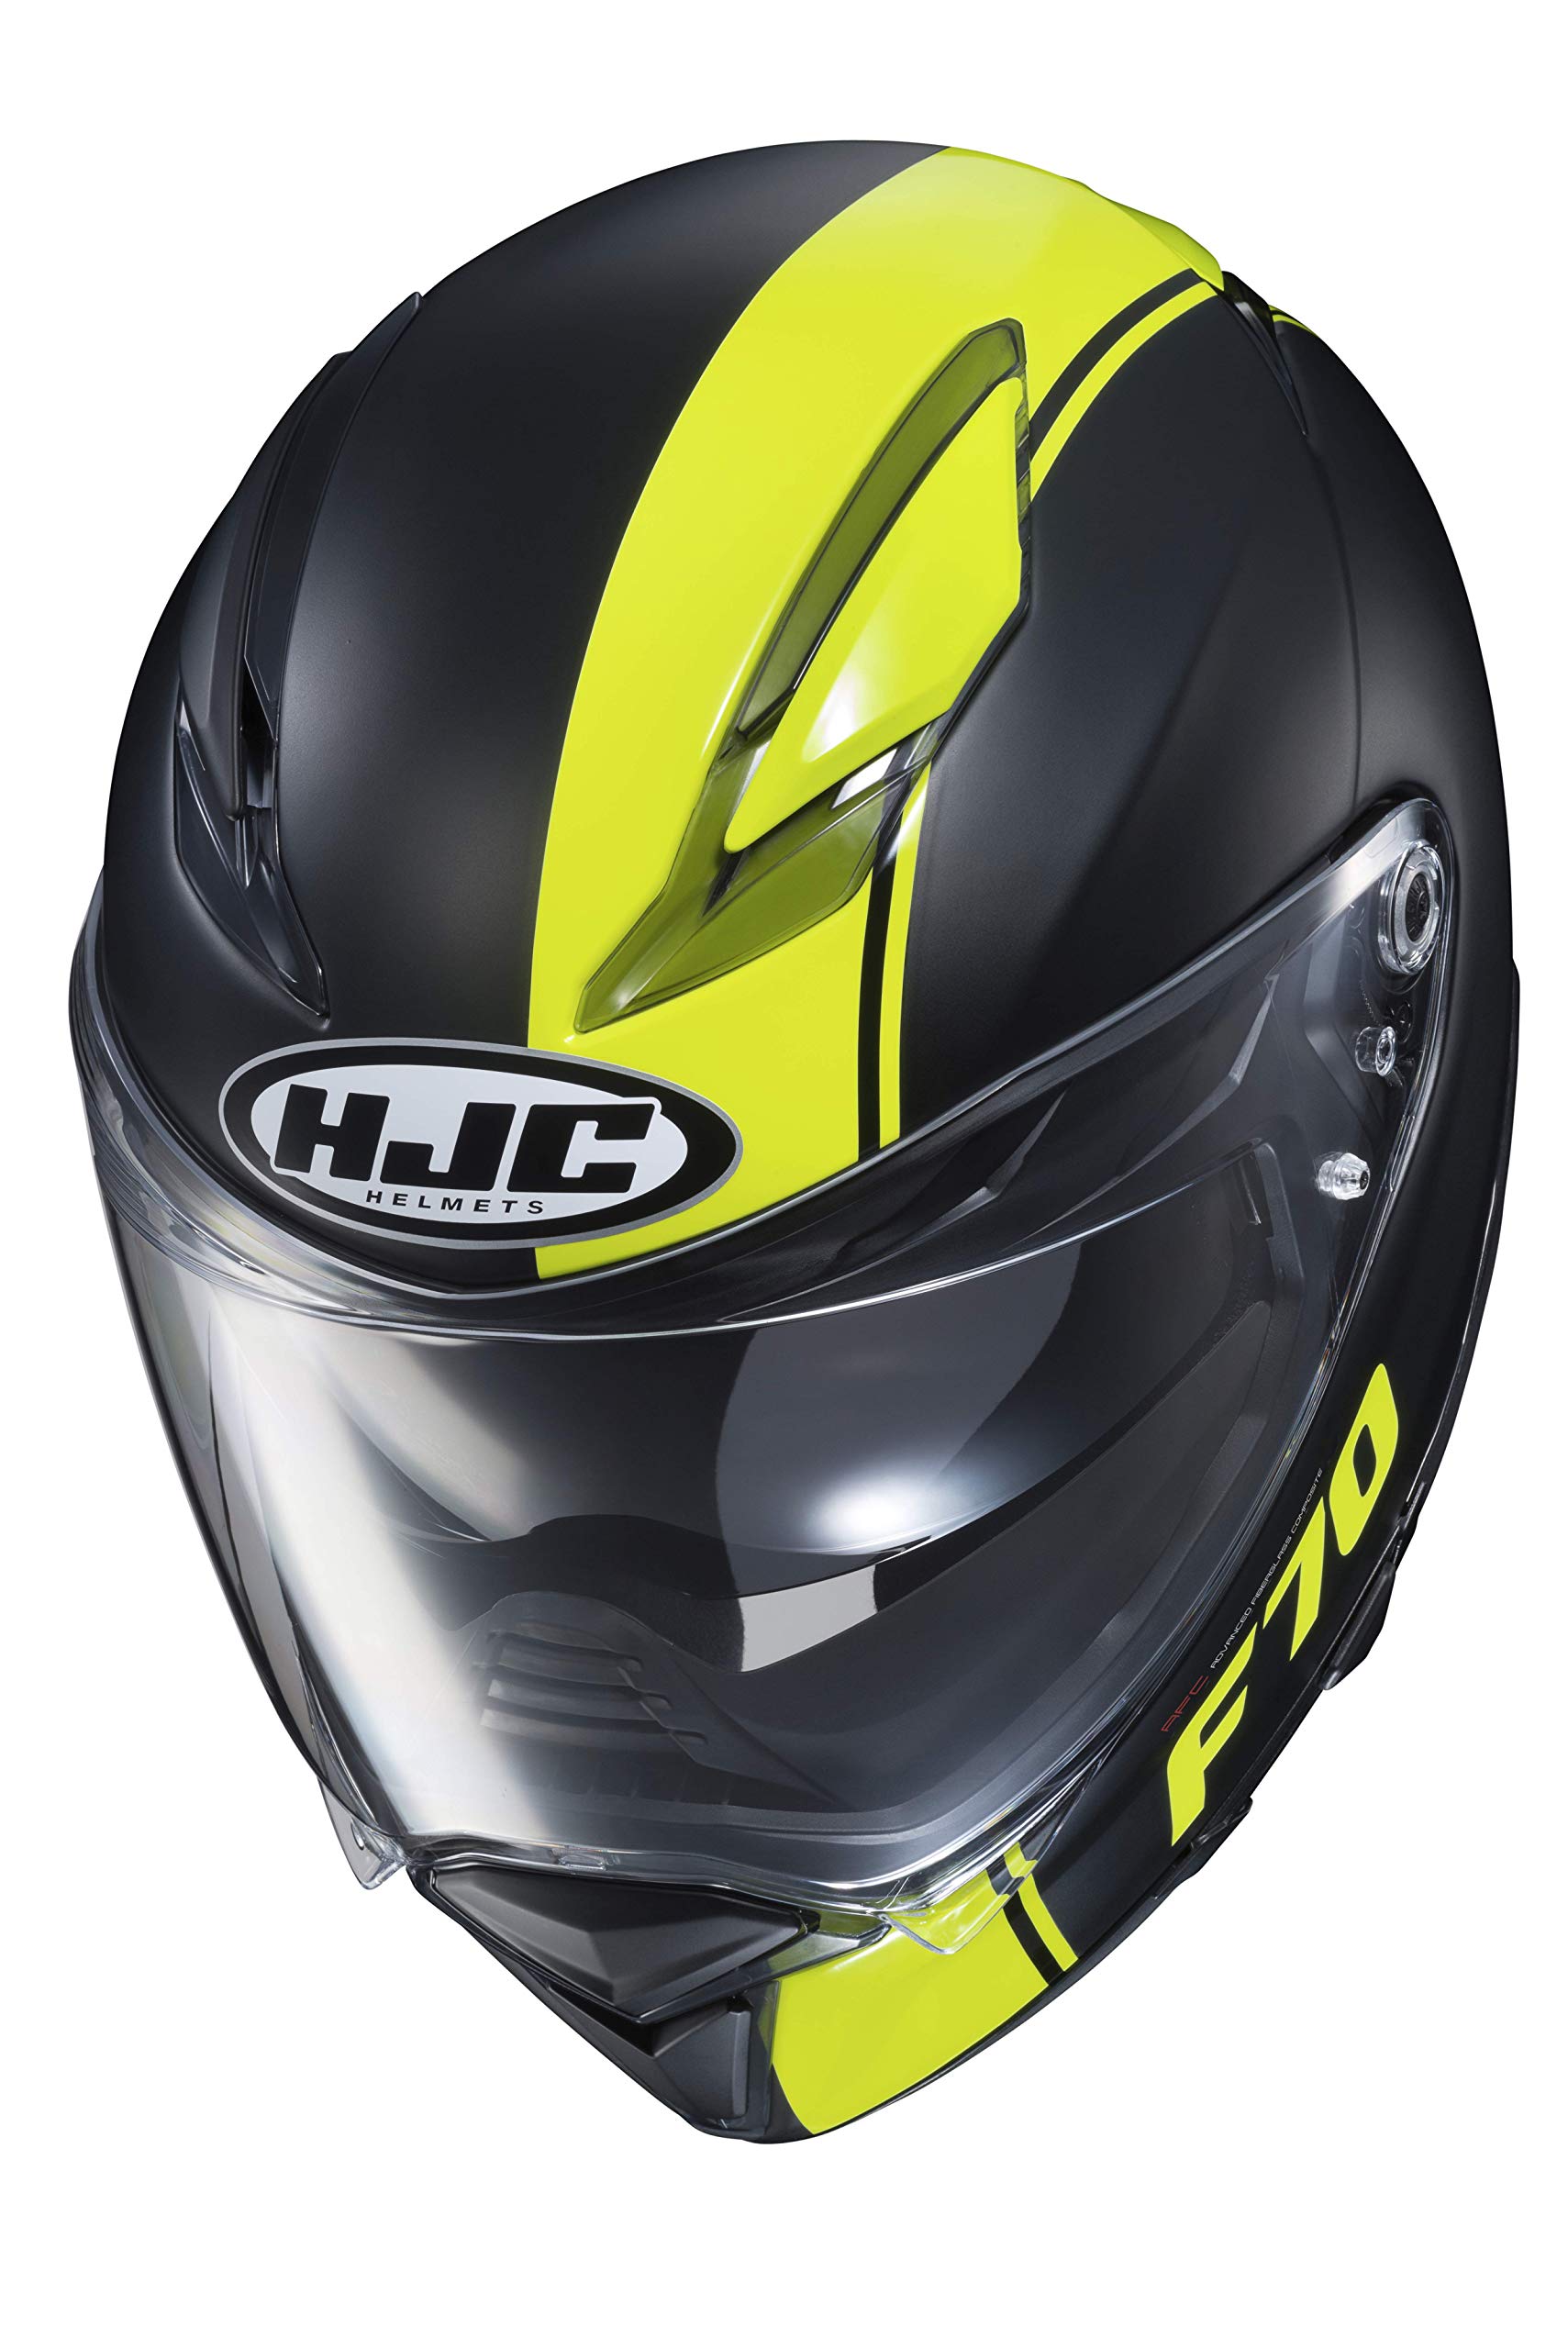 HJC Helmets Herren Nc Motorrad Helm, Schwarz/Gelb, S von HJC Helmets